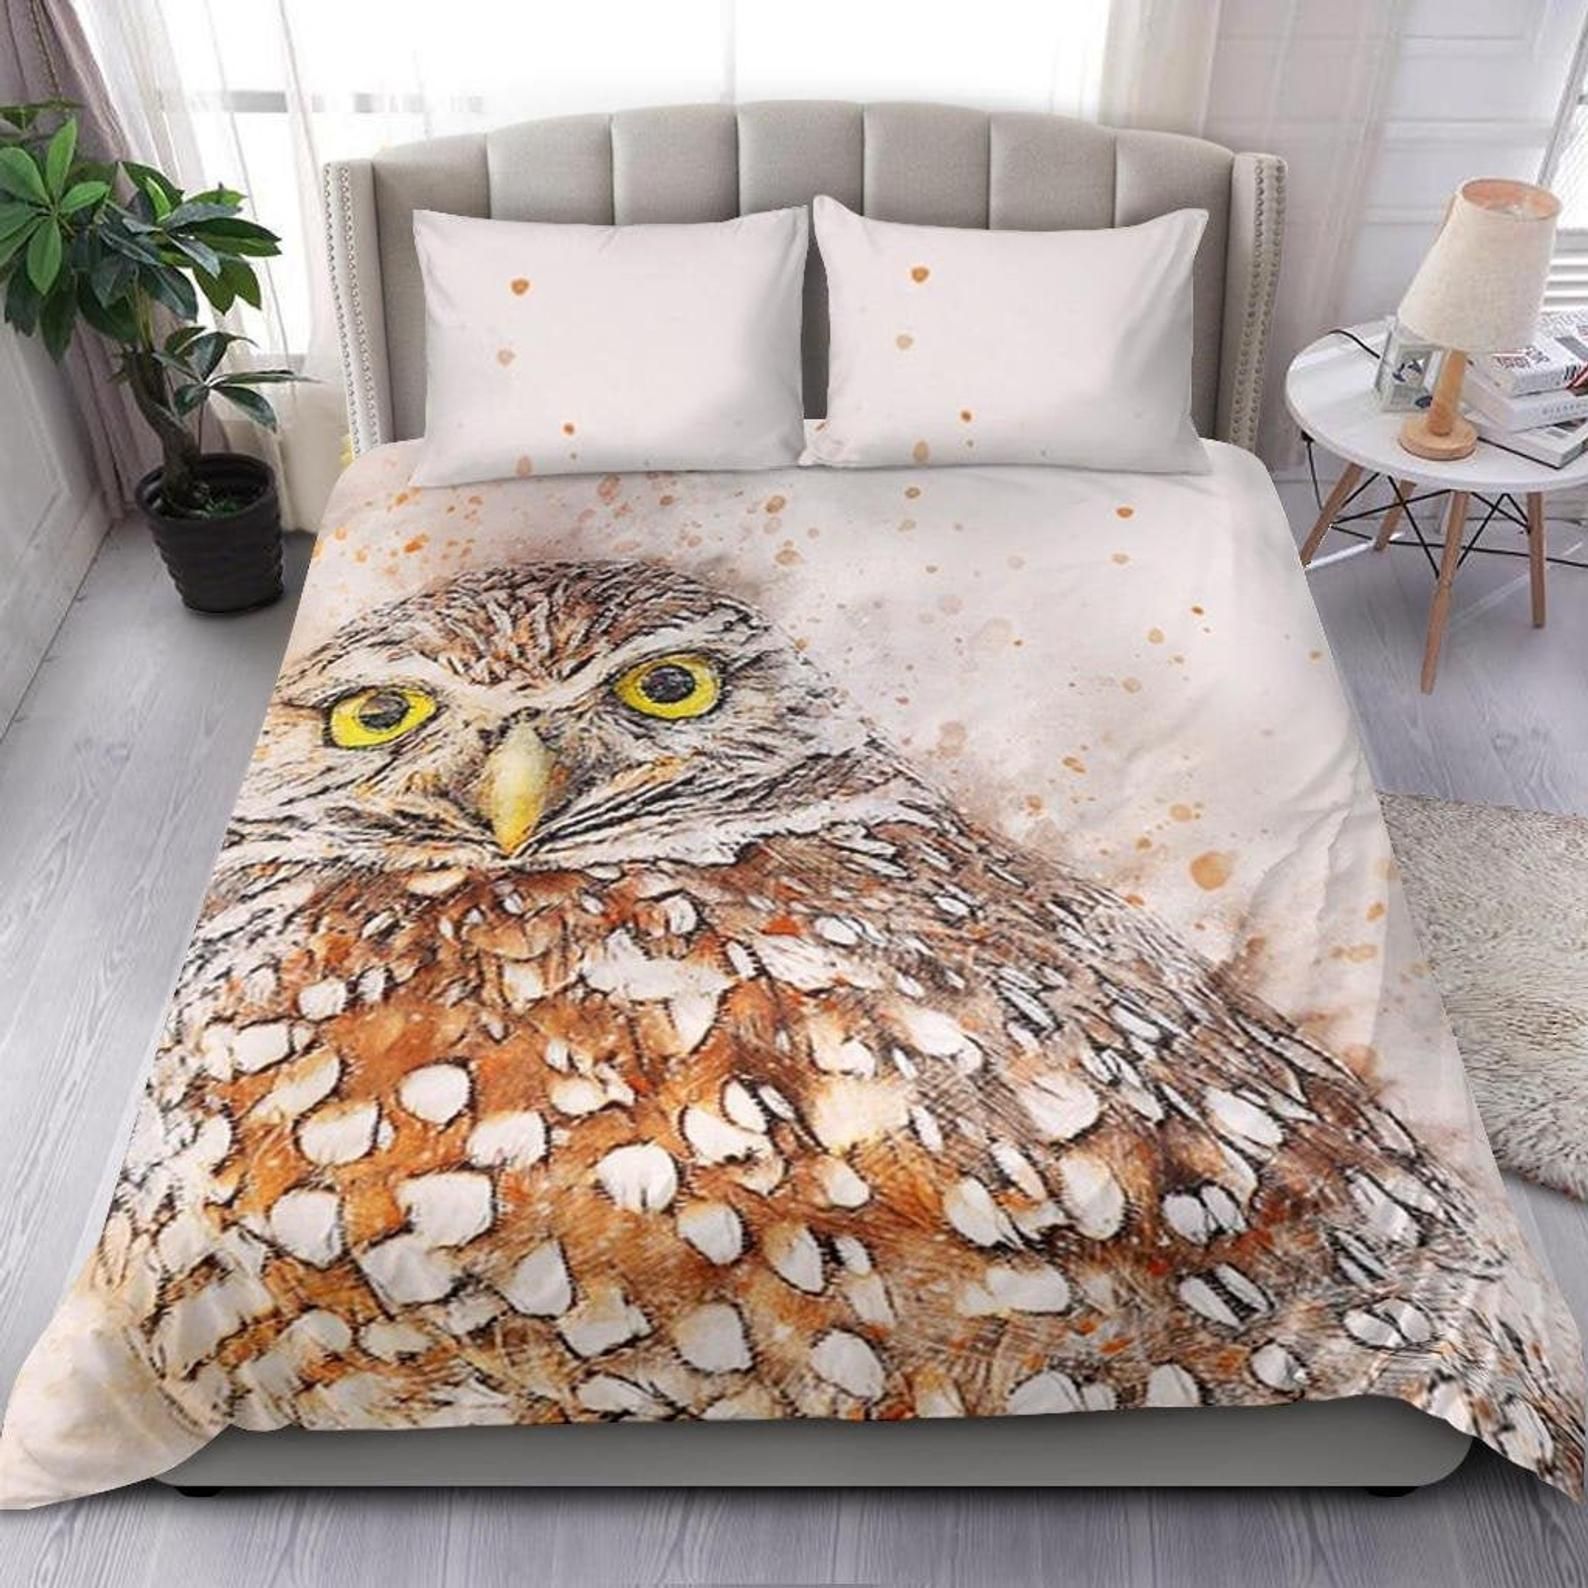 Owl Bedding Set Cotton Bed Sheets Spread Comforter Duvet Cover Bedding Sets